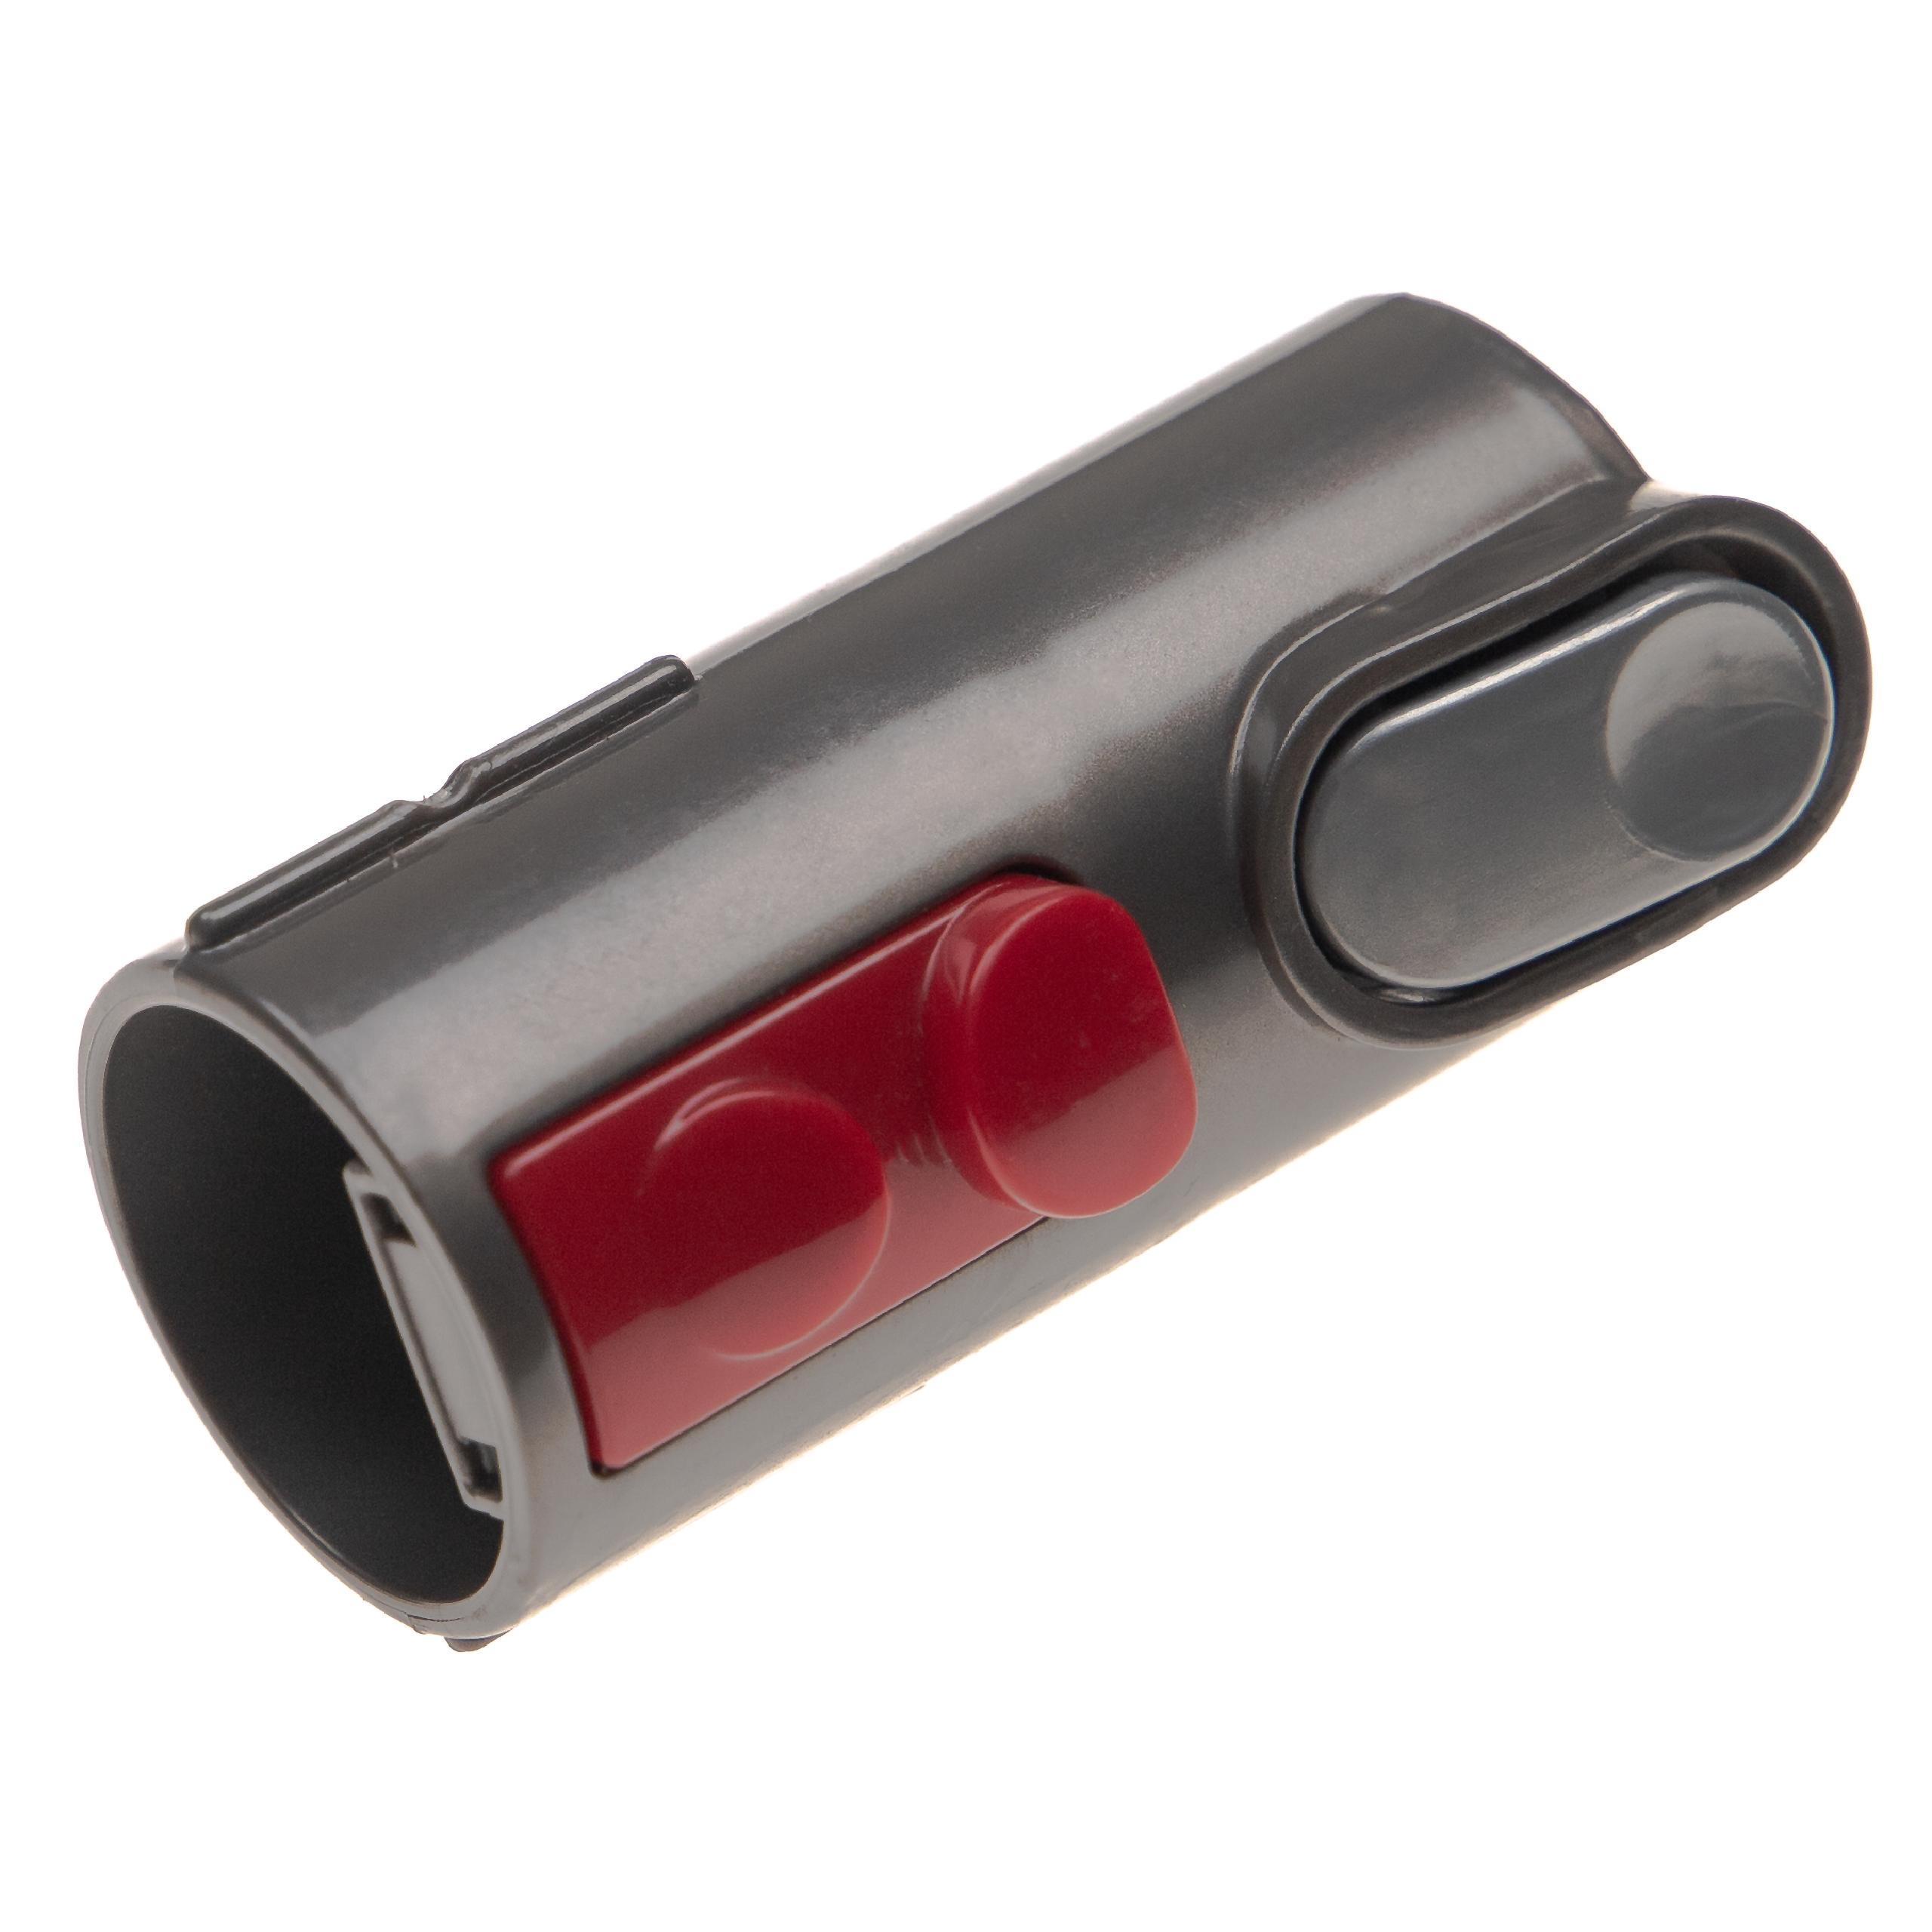 Raccordo sostituisce Dyson 967370-01 per aspiratore (retro-compatibile) - nero / rosso